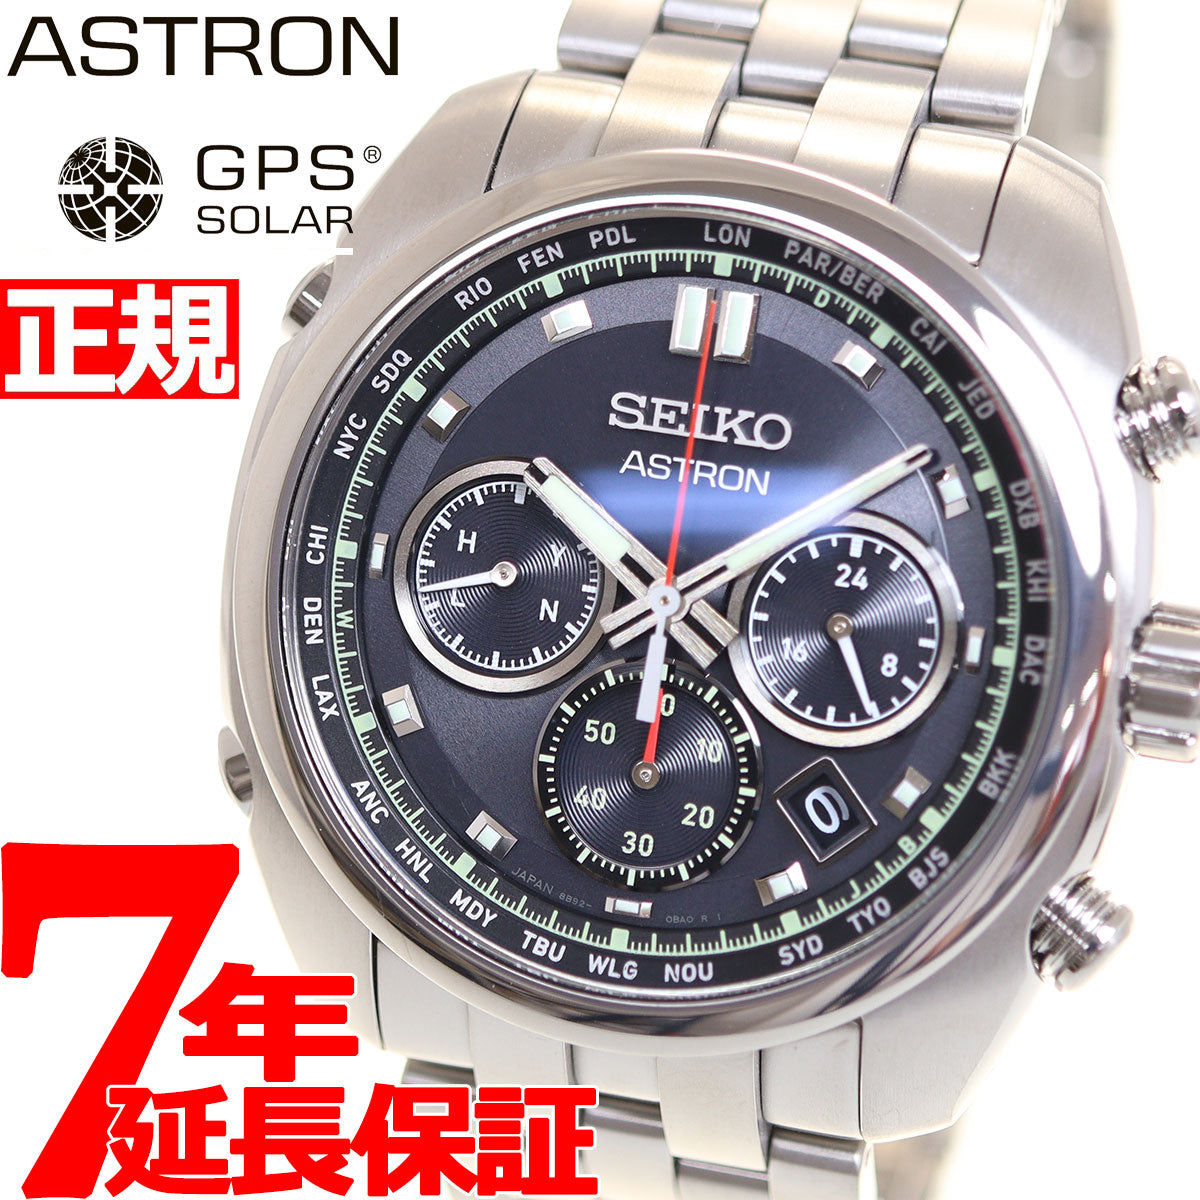 SEIKO アストロンオリジン電波ソーラー チタン メンズ腕時計 SBXY027よろしくお願いいたします